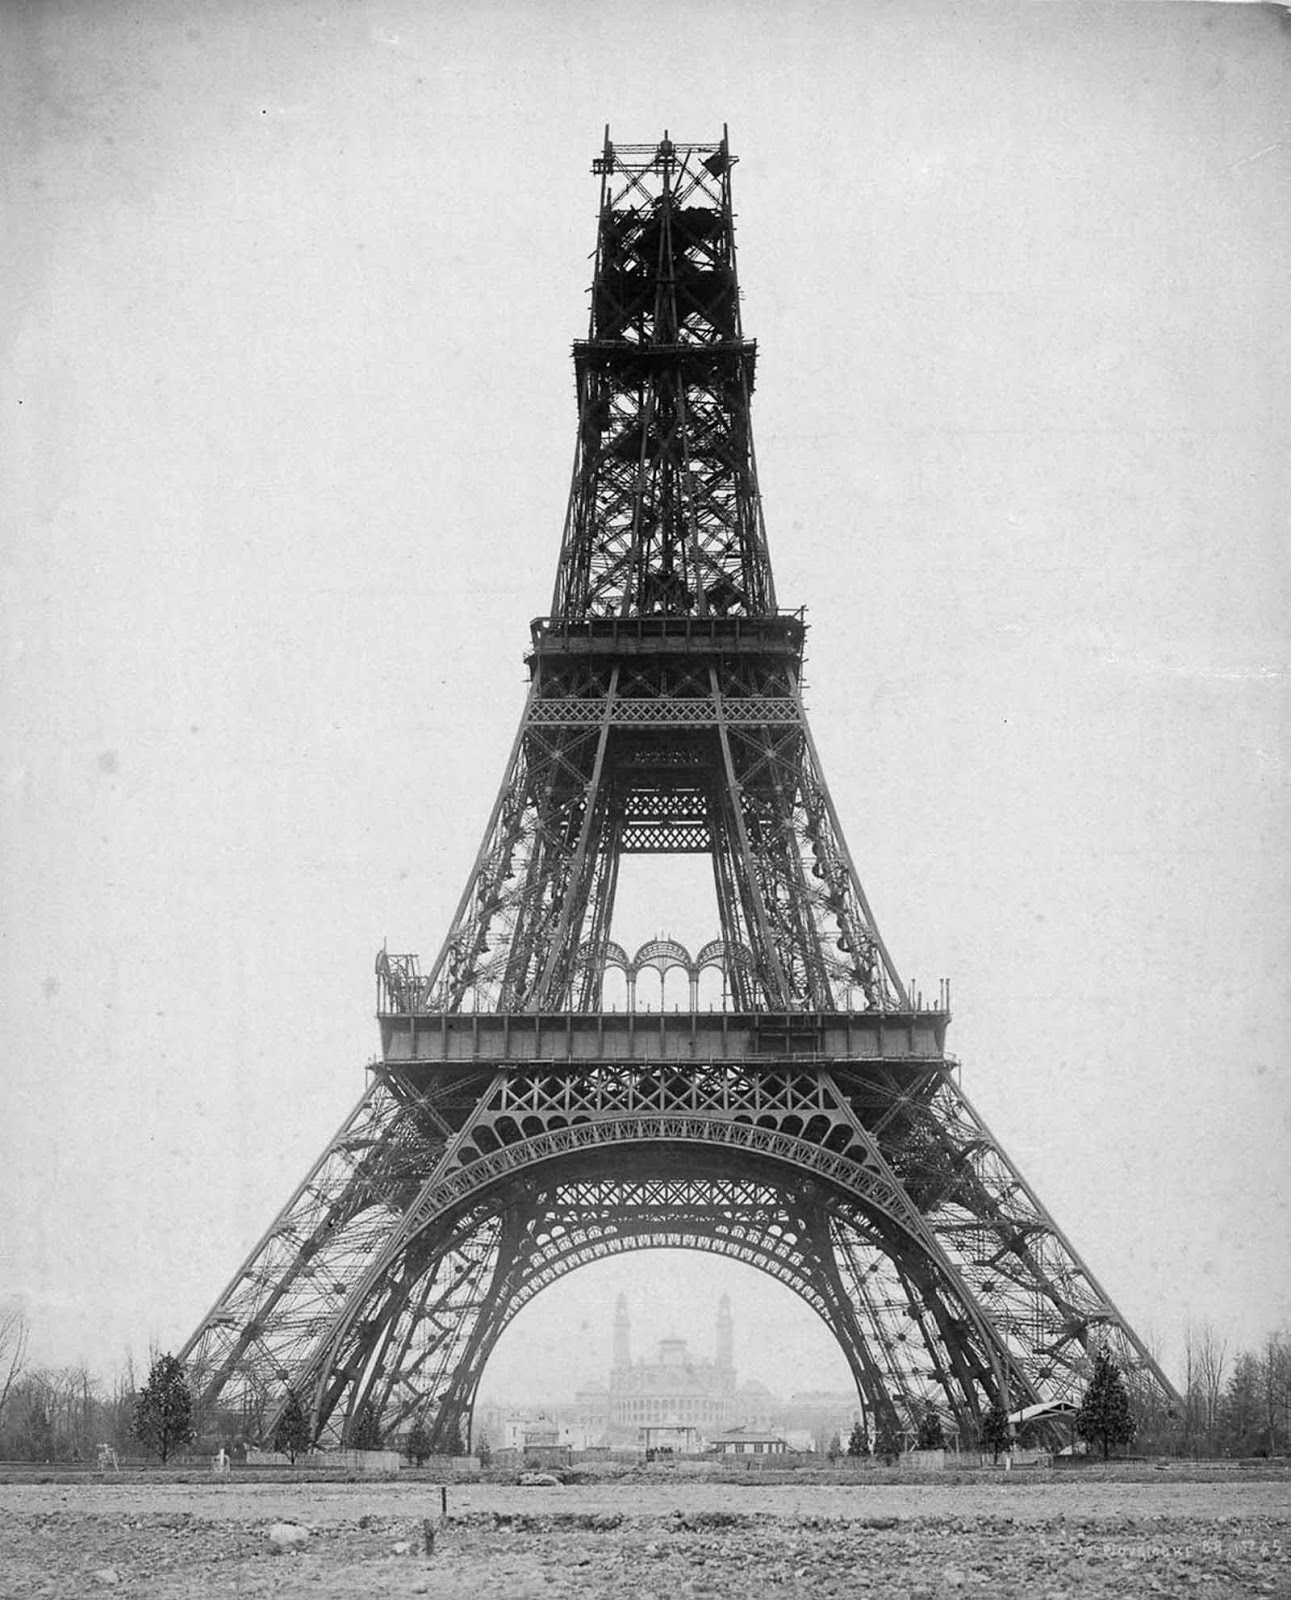 Eiffel Tower under construction, 1887-1889